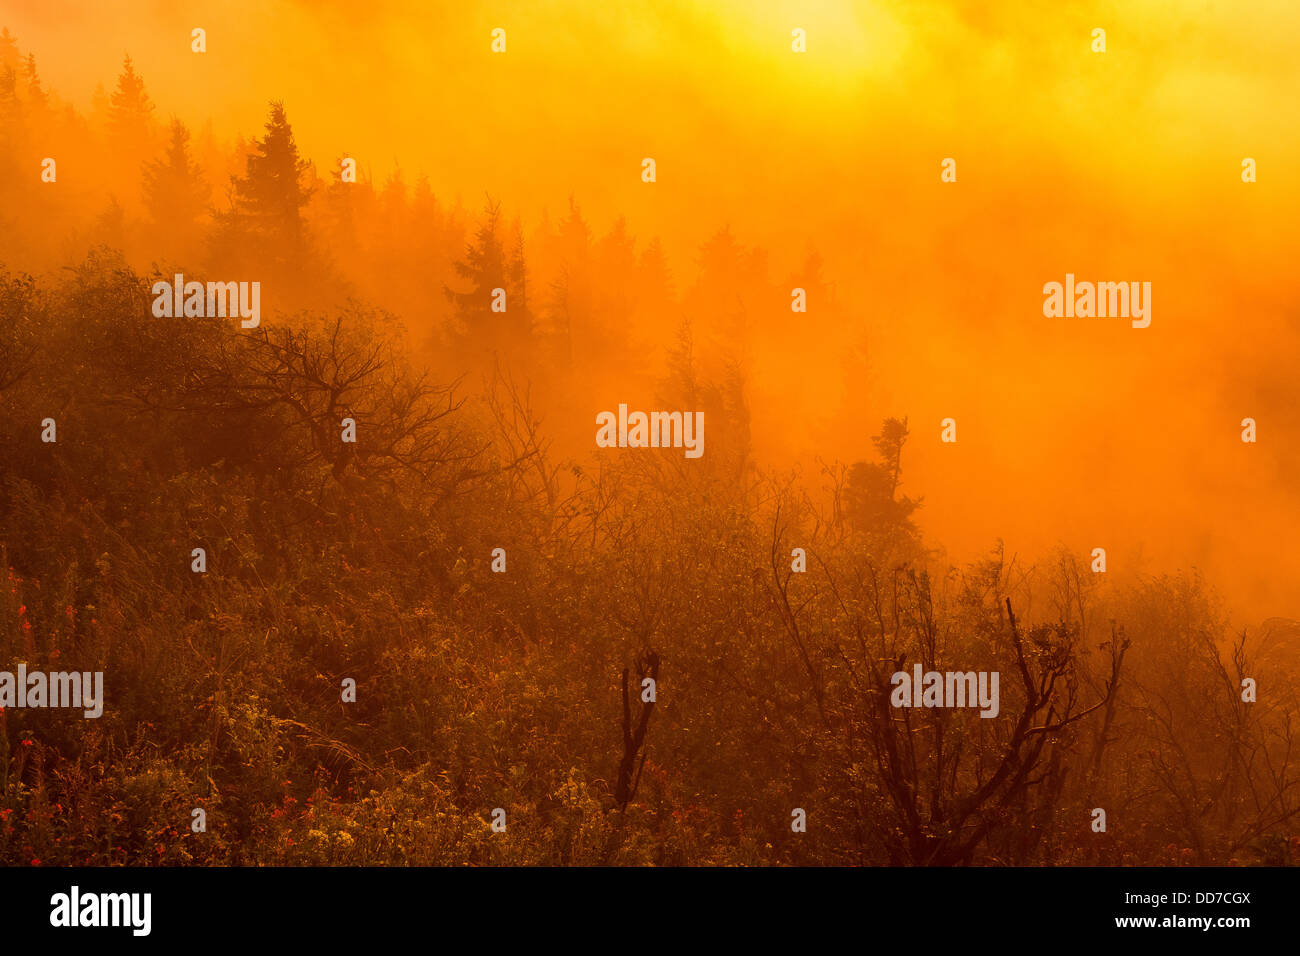 Bush, boccole, forestali, legni, arancio, nebbia, foggy, albero, alberi, sunset Foto Stock